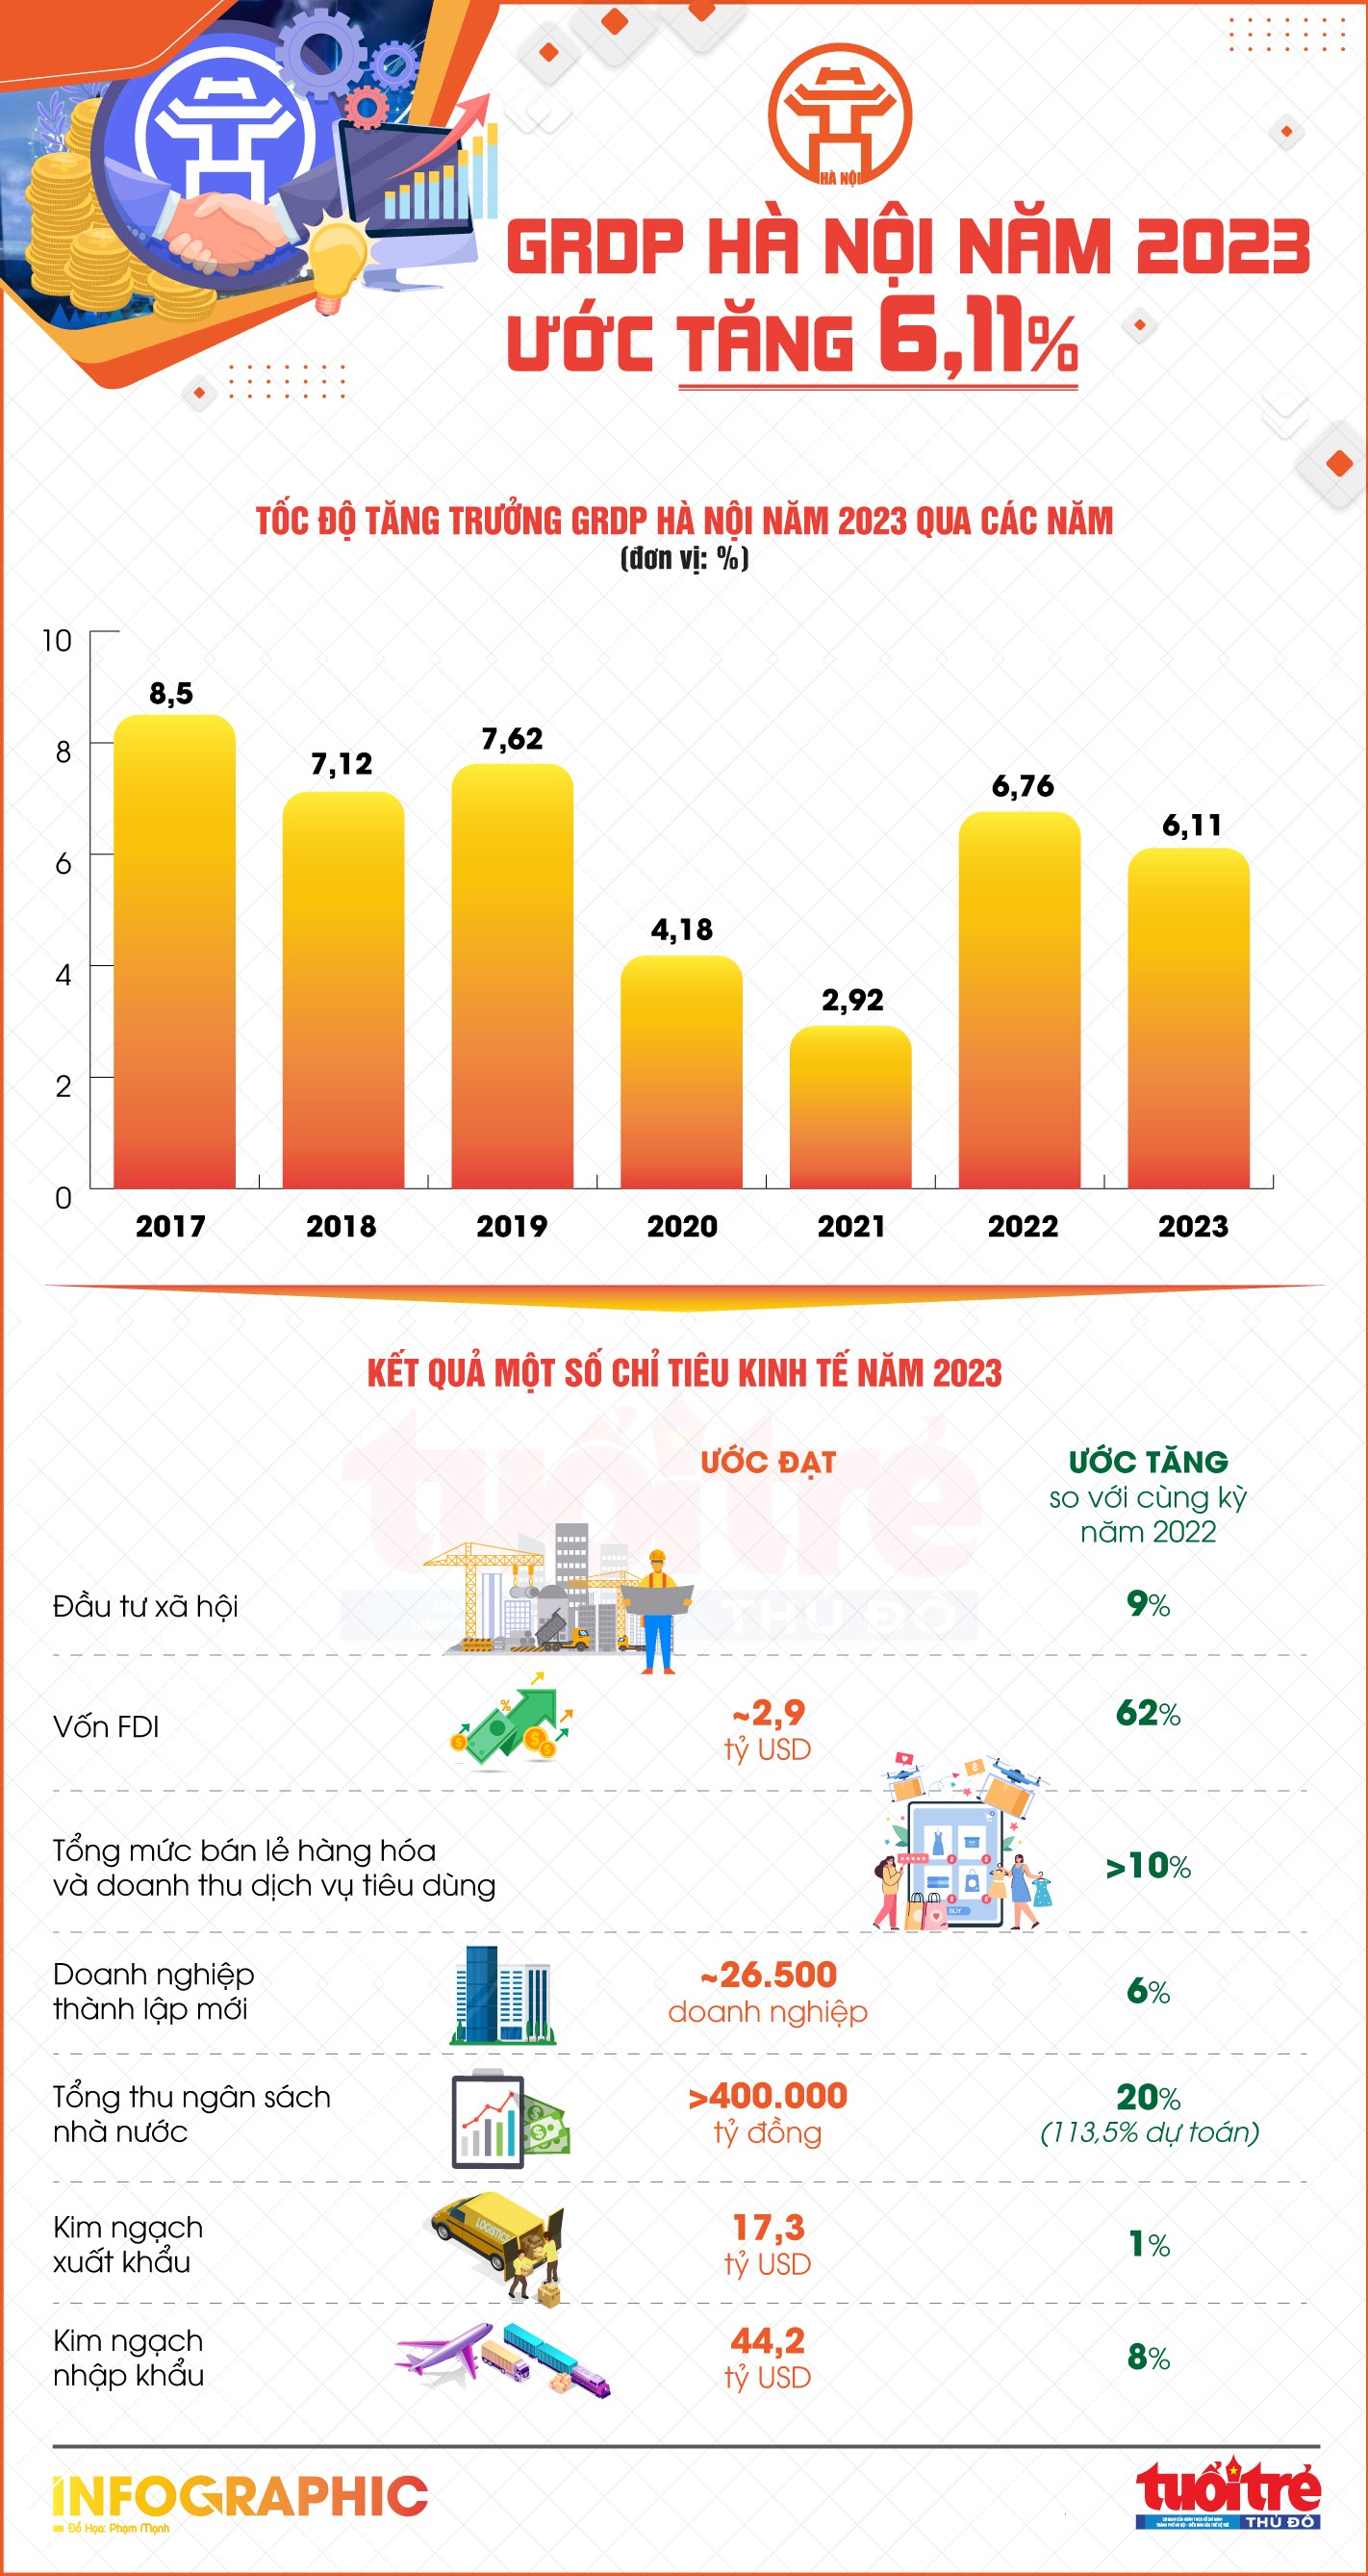 GRDP Hà Nội trong năm 2023 ước tăng 6,11%